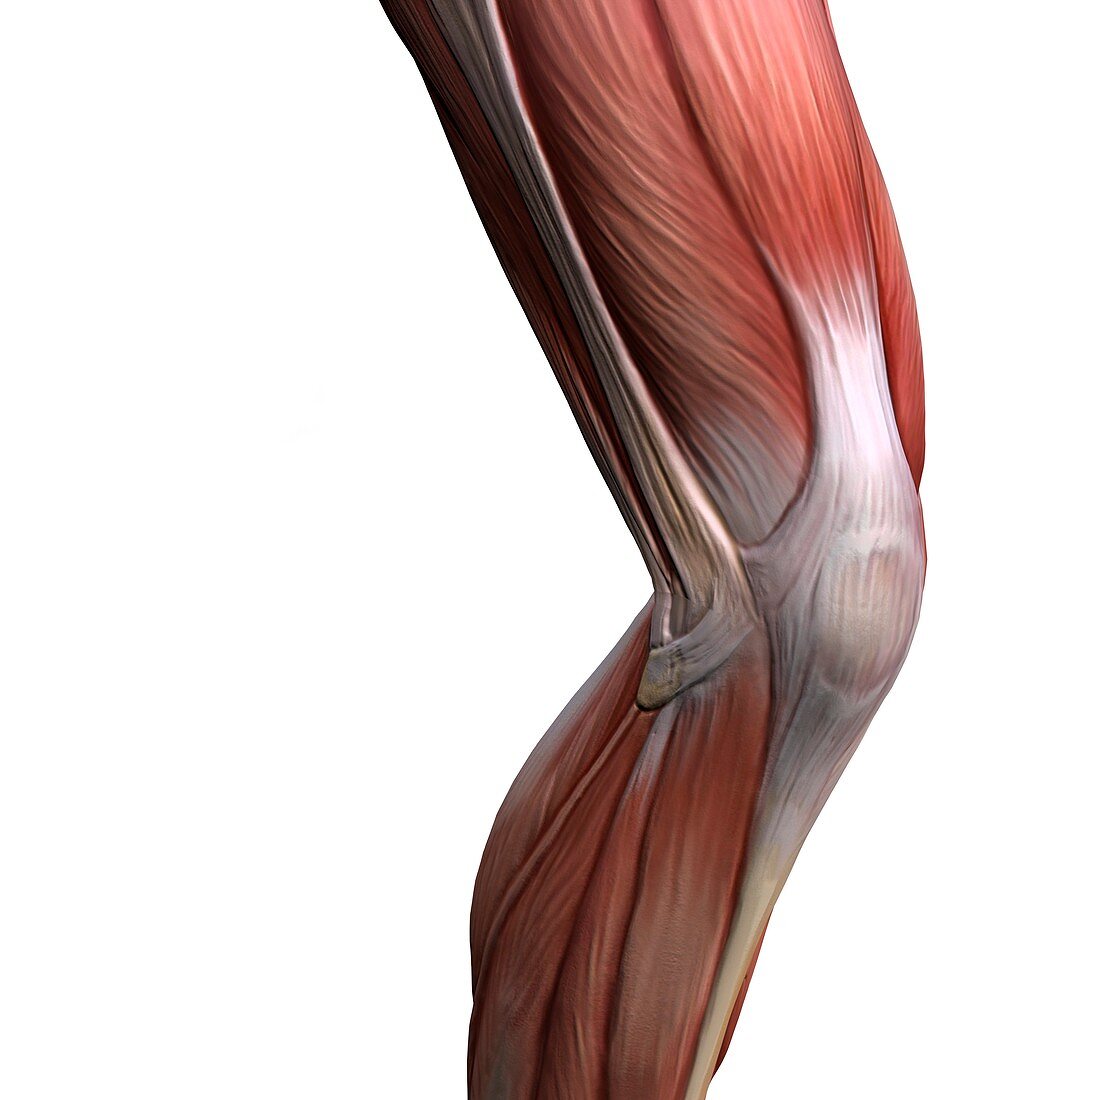 Knee muscles,artwork